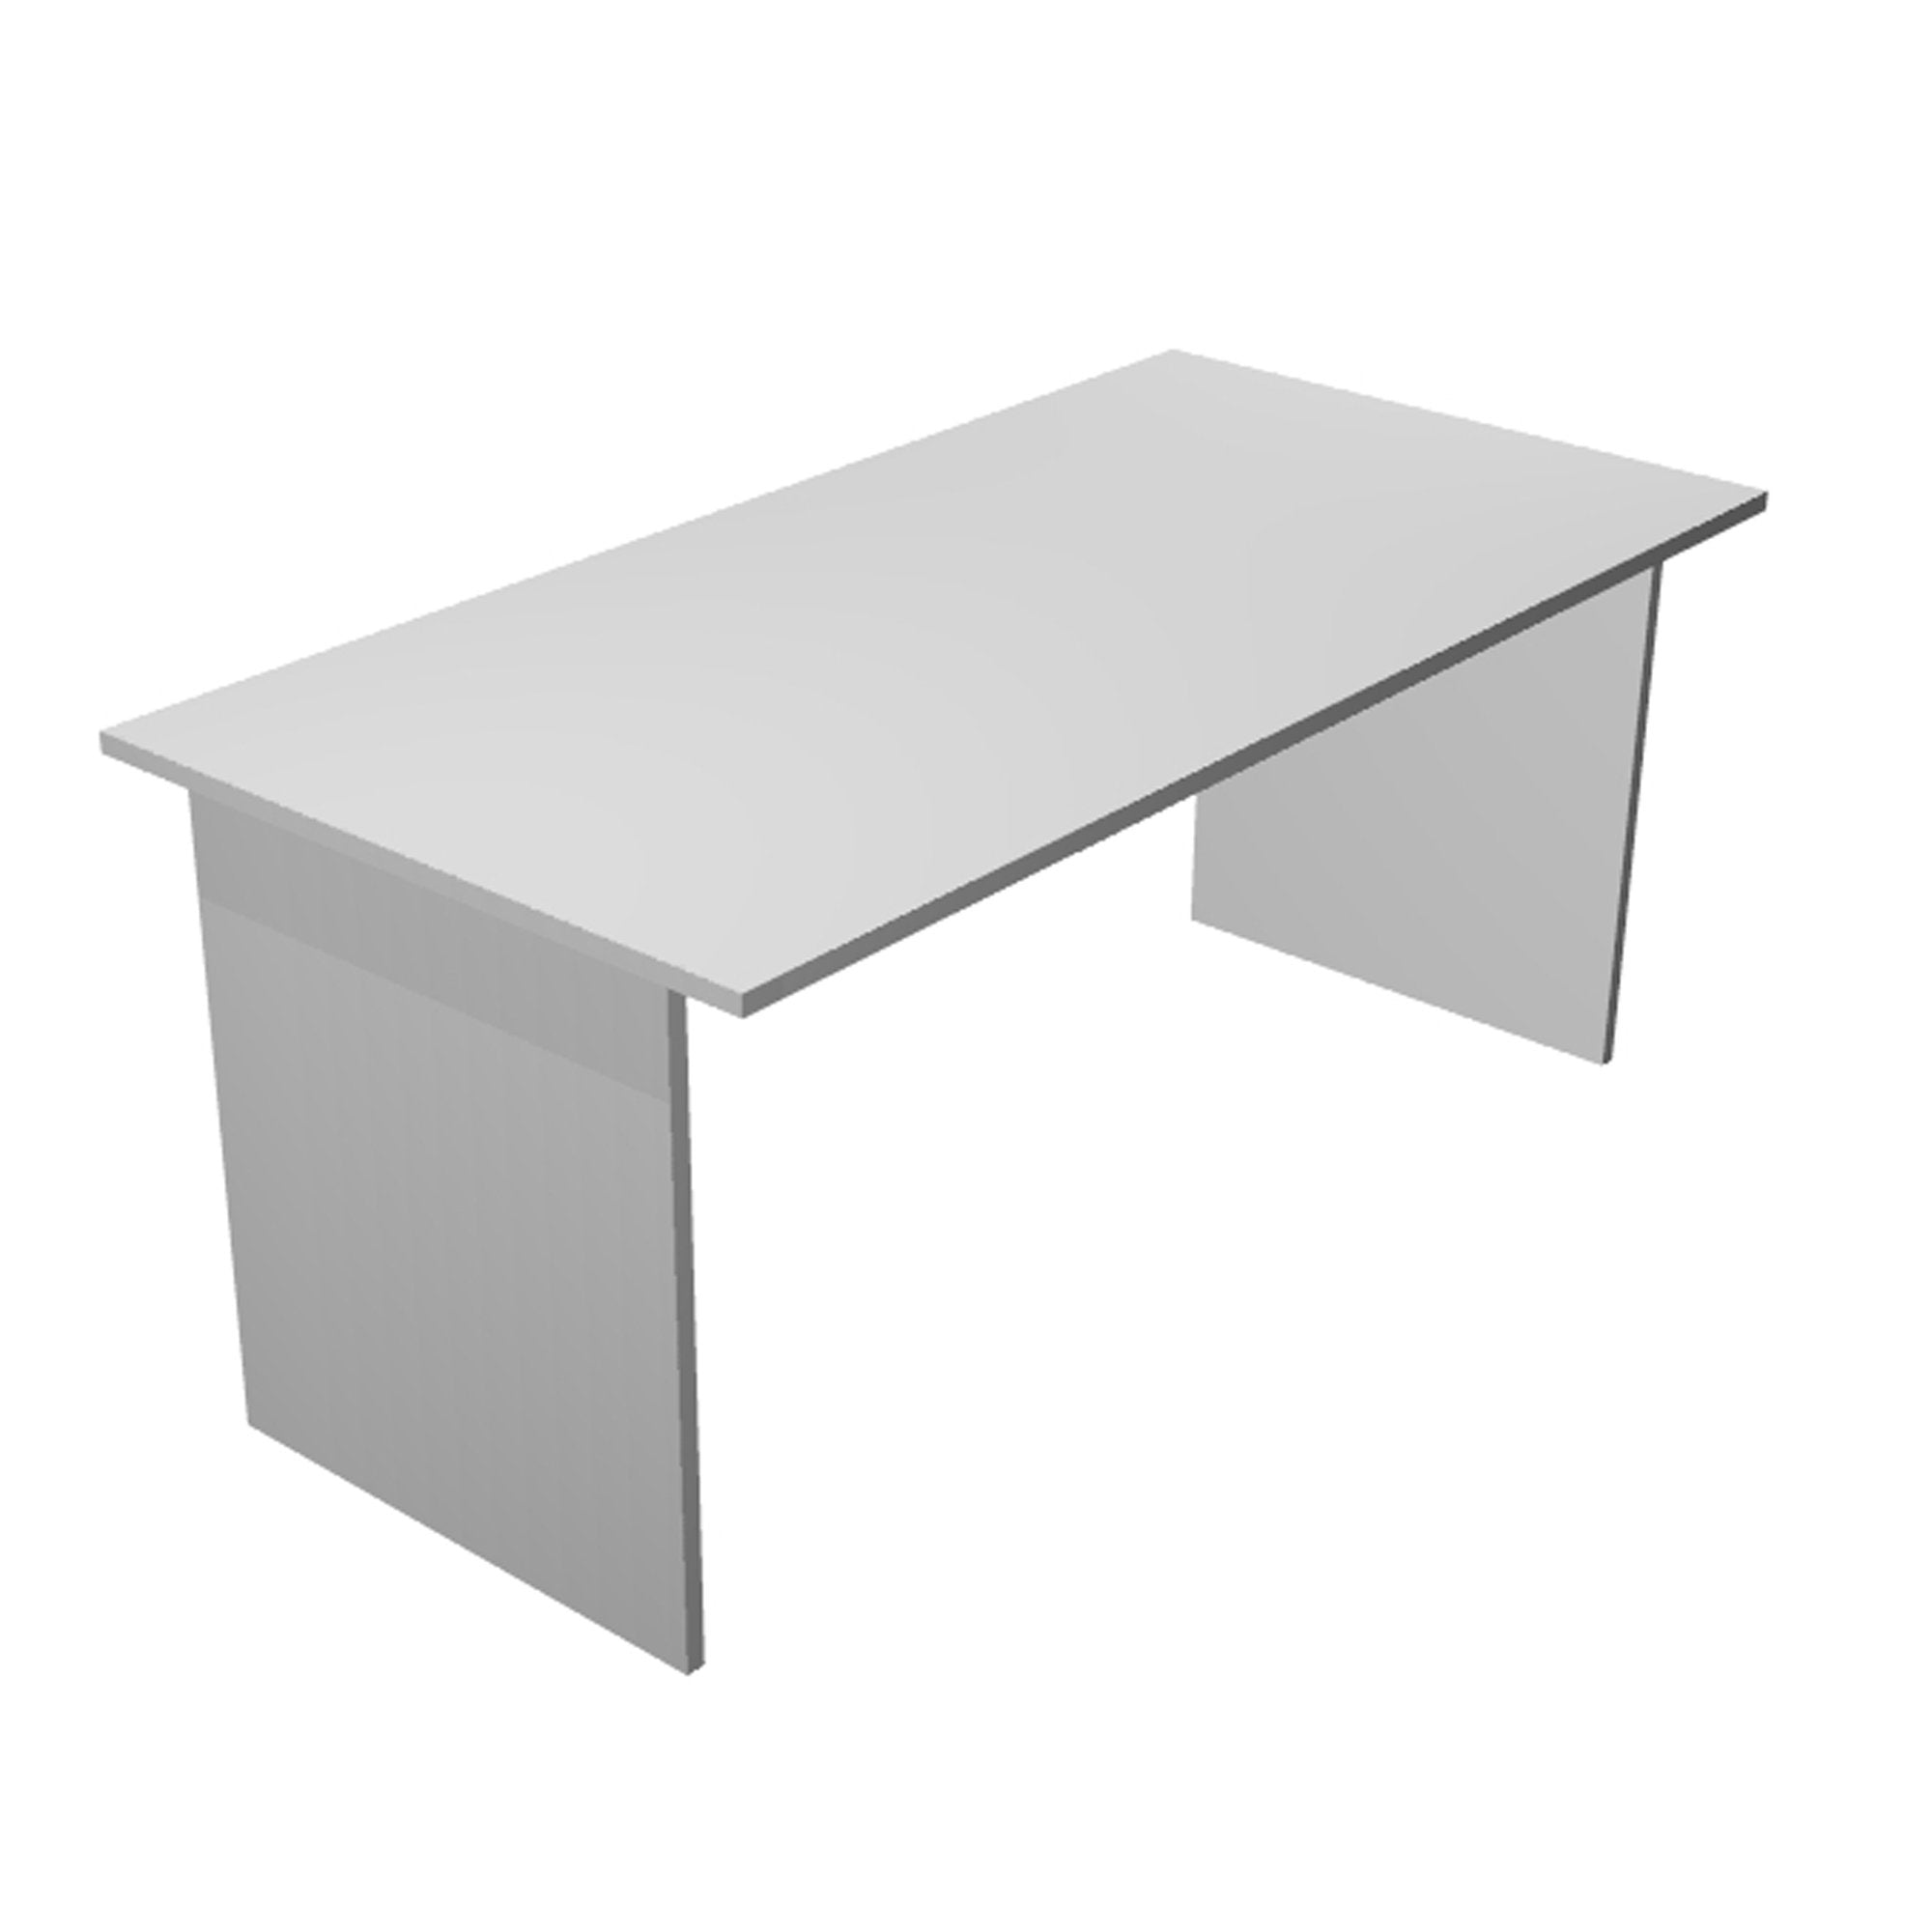 artexport-scrivania-lineare-160x80cm-grigio-easy